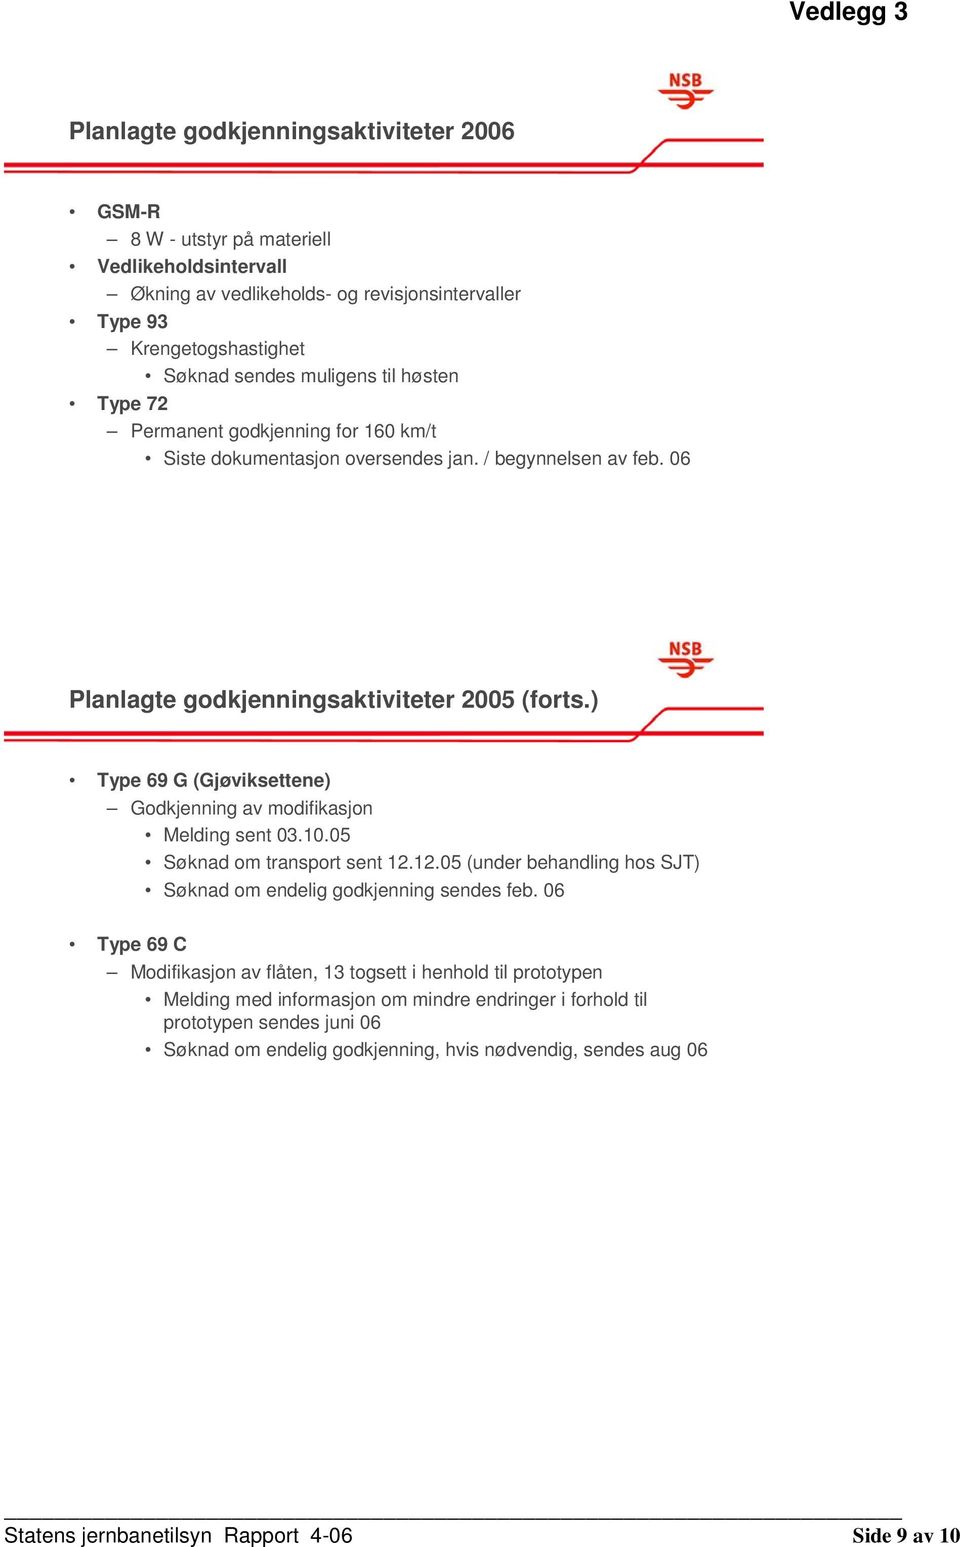 ) Type 69 G (Gjøviksettene) Godkjenning av modifikasjon Melding sent 03.10.05 Søknad om transport sent 12.12.05 (under behandling hos SJT) Søknad om endelig godkjenning sendes feb.